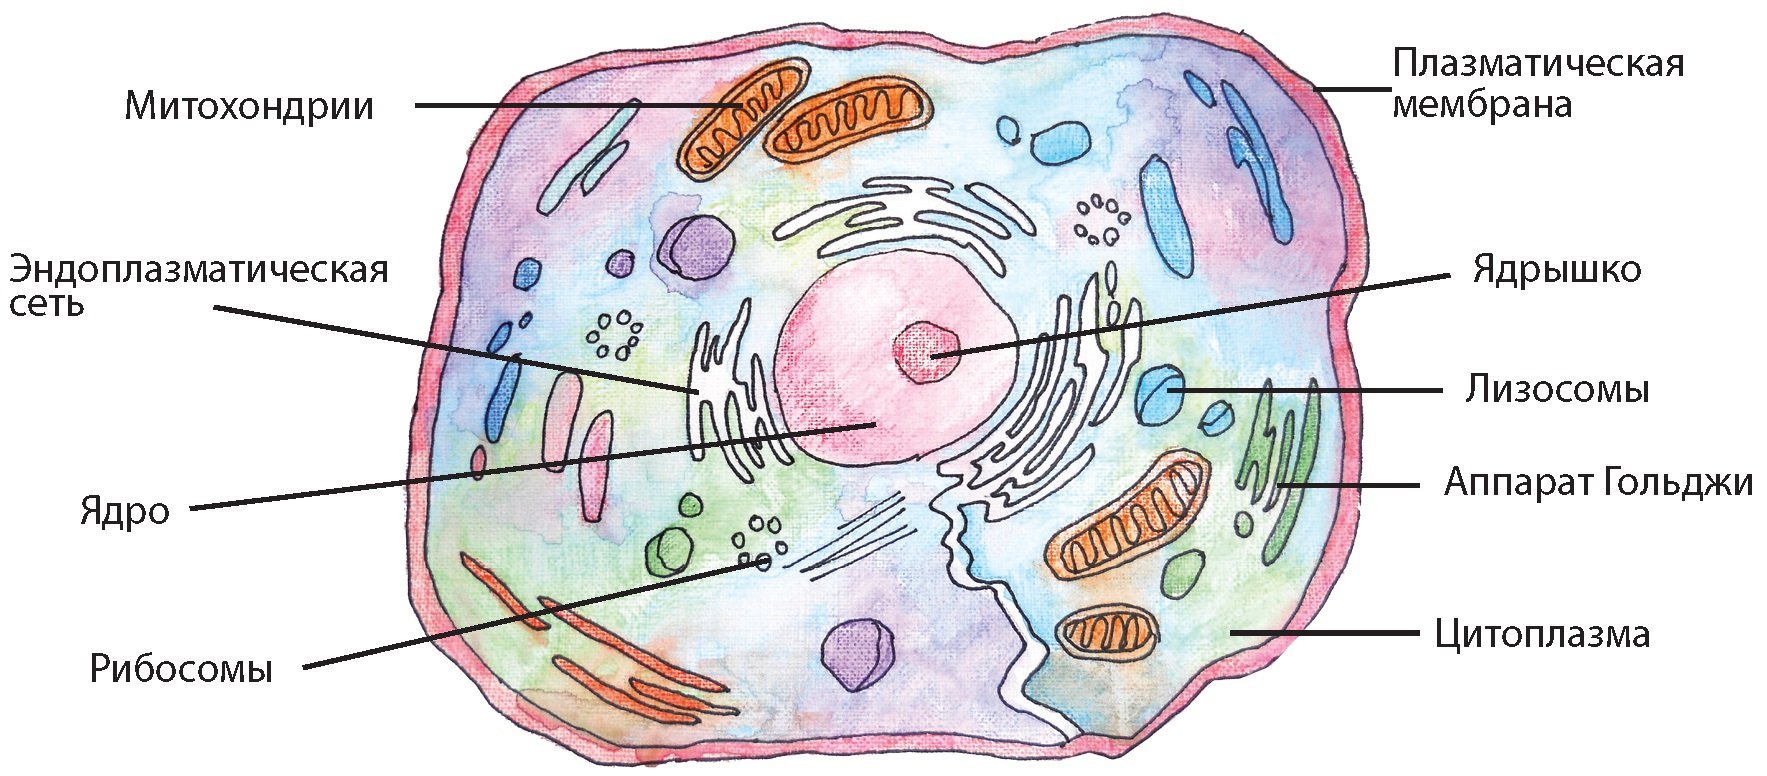 Рисунок лизосомы эукариотической клетки